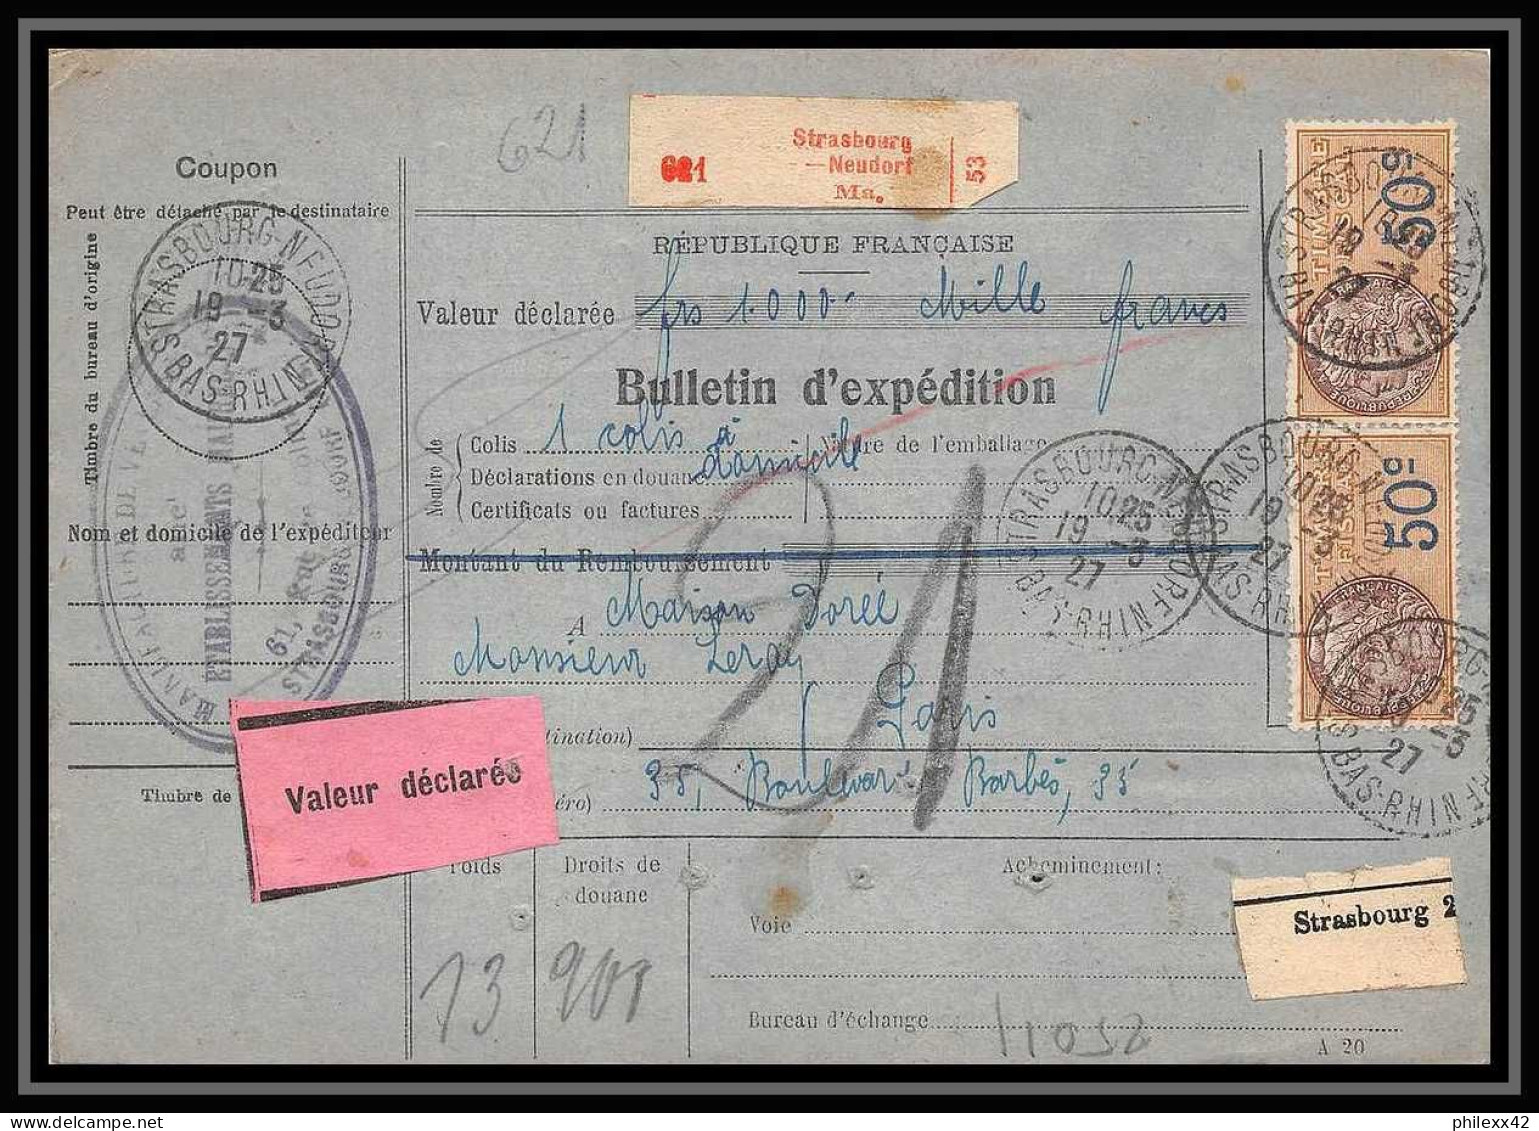 25011 Bulletin D'expédition France Colis Postaux Fiscal Haut Rhin 1927 Strasbourg Semeuse Merson 123 Valeur Déclarée - Lettres & Documents